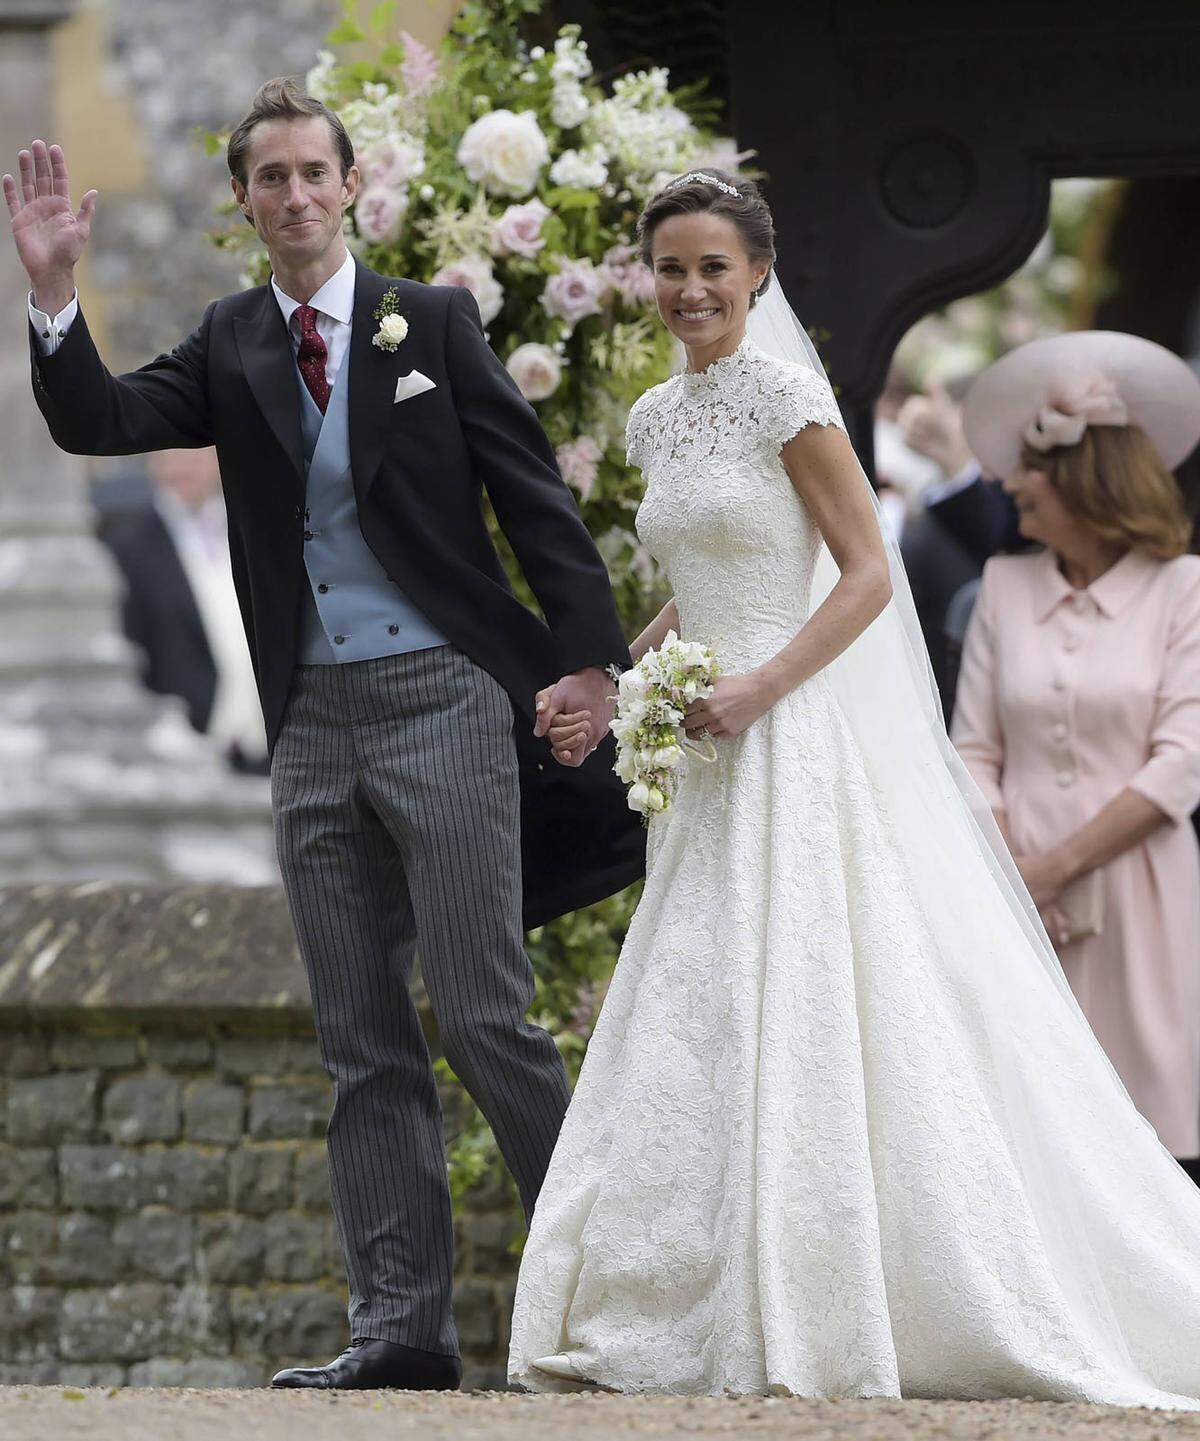 Nicht adelig, dafür verwandt: Pippa Middleton, die Schwester von Herzogin Kate, heiratete James Matthews 2017. Sie trug ein hochgeschlossenes, aber modernes Spitzenkleid von Giles Deacon.      